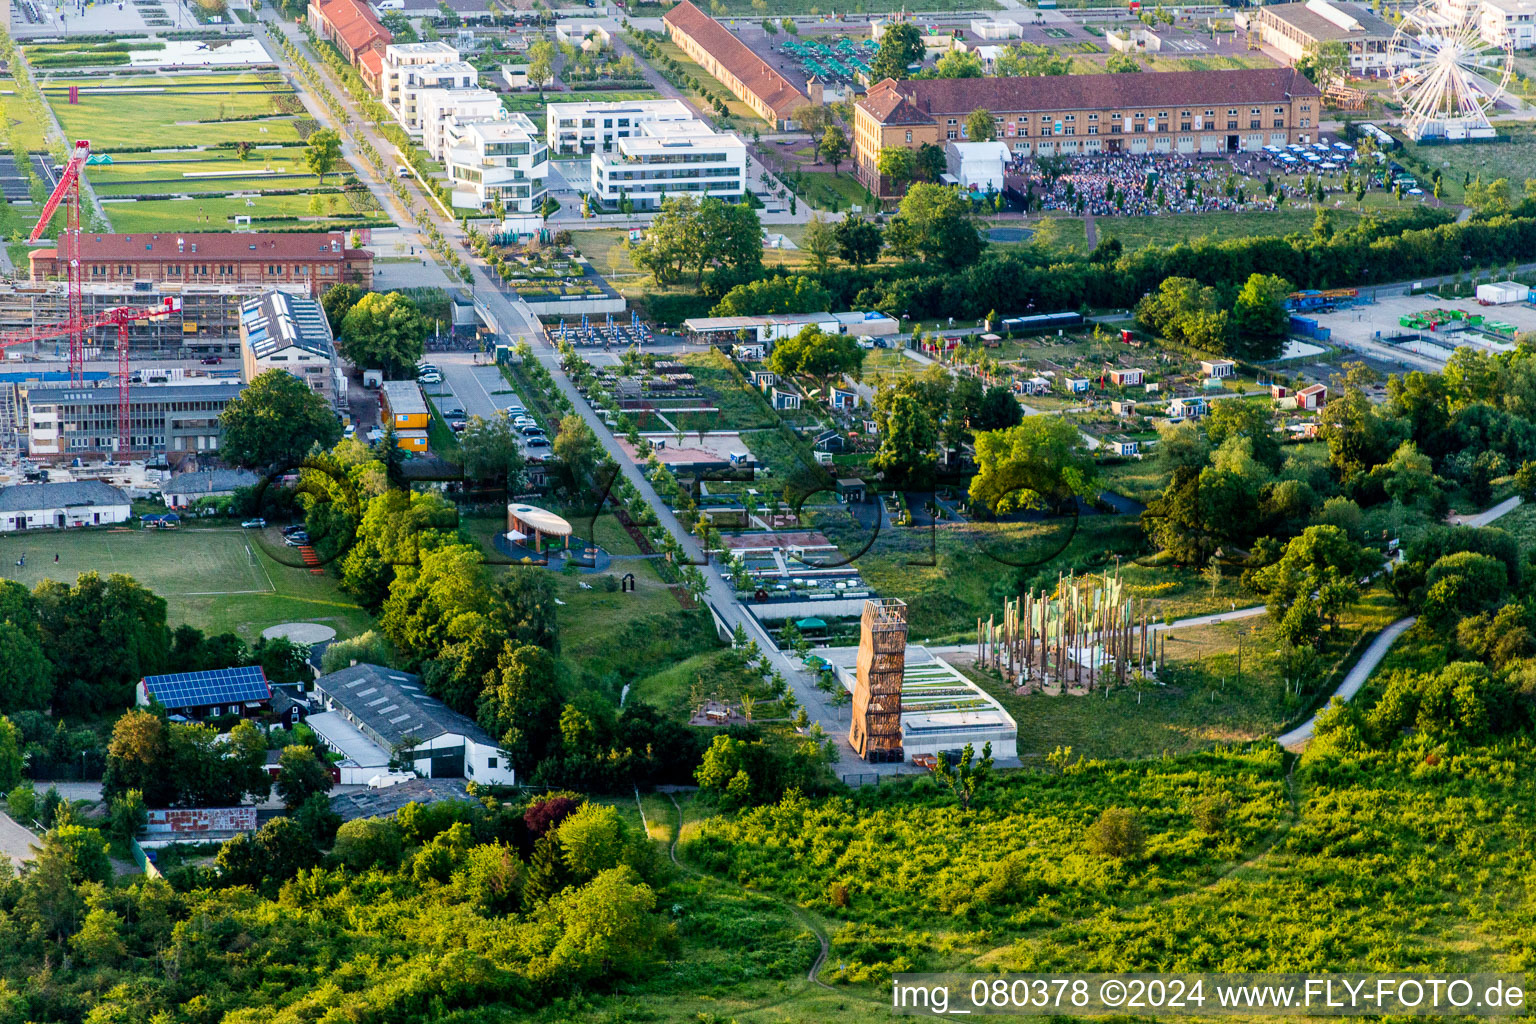 Luftbild von Ausstellungsgelände der Landesgartenschau 2015 in Landau in der Pfalz im Bundesland Rheinland-Pfalz, Deutschland